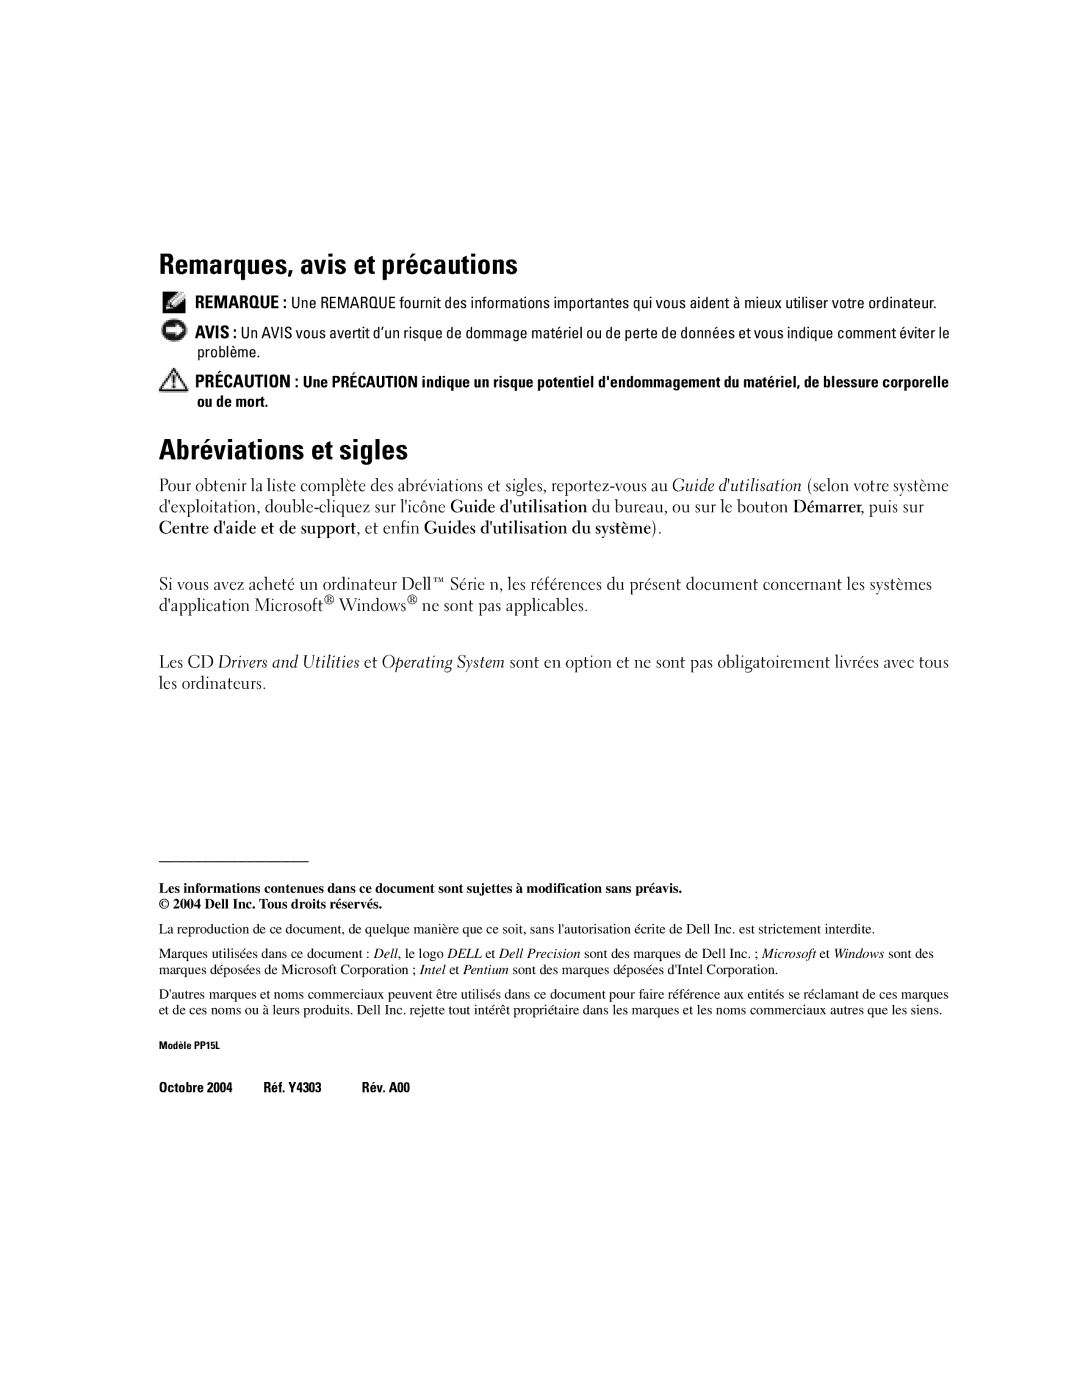 Dell M70 Mobile manual Remarques, avis et précautions, Abréviations et sigles 